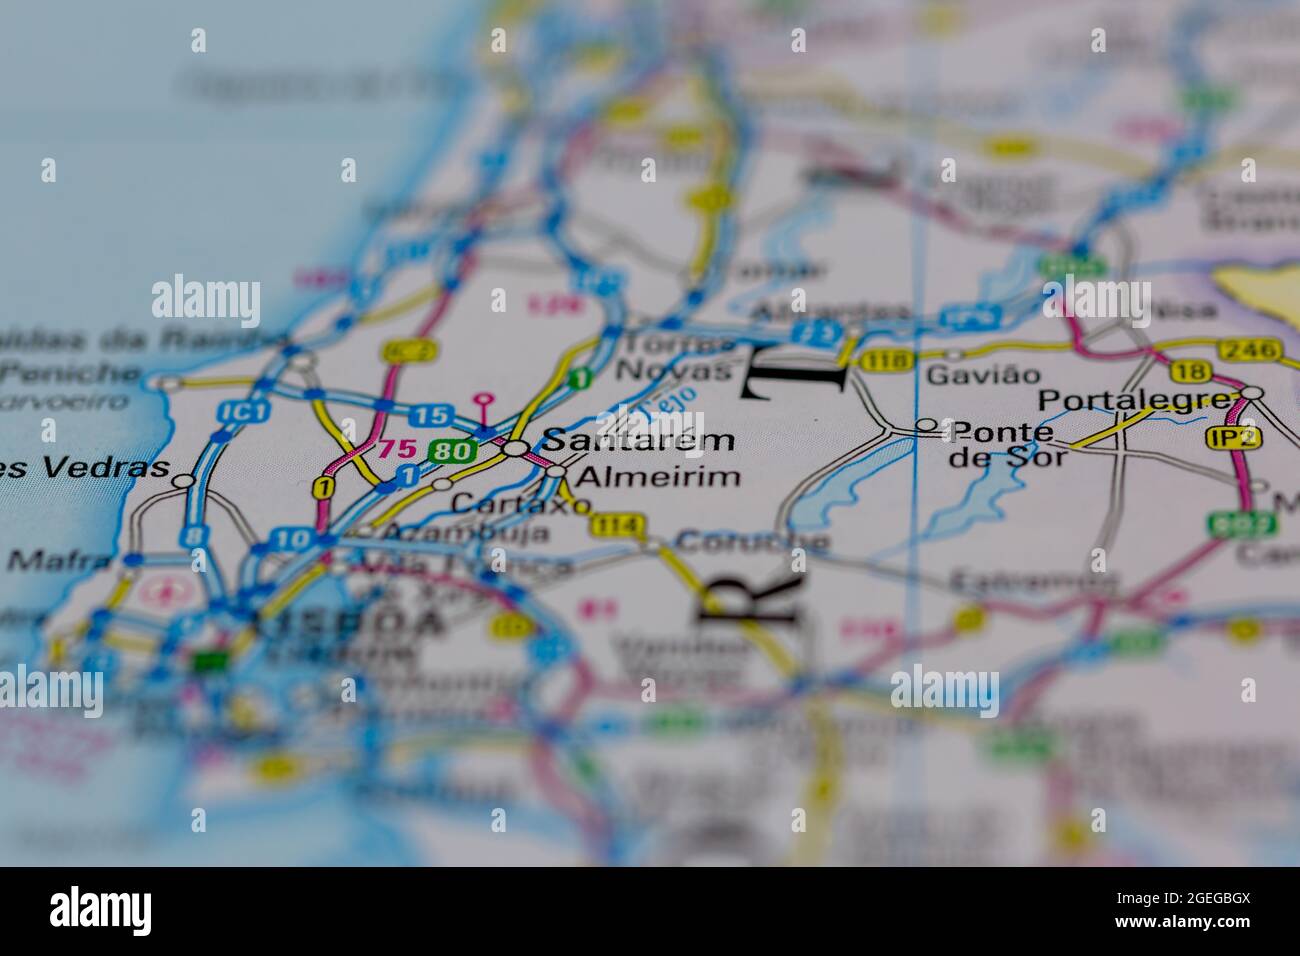 Santarem Portugal aparece en un mapa de carreteras o en un mapa geográfico Foto de stock